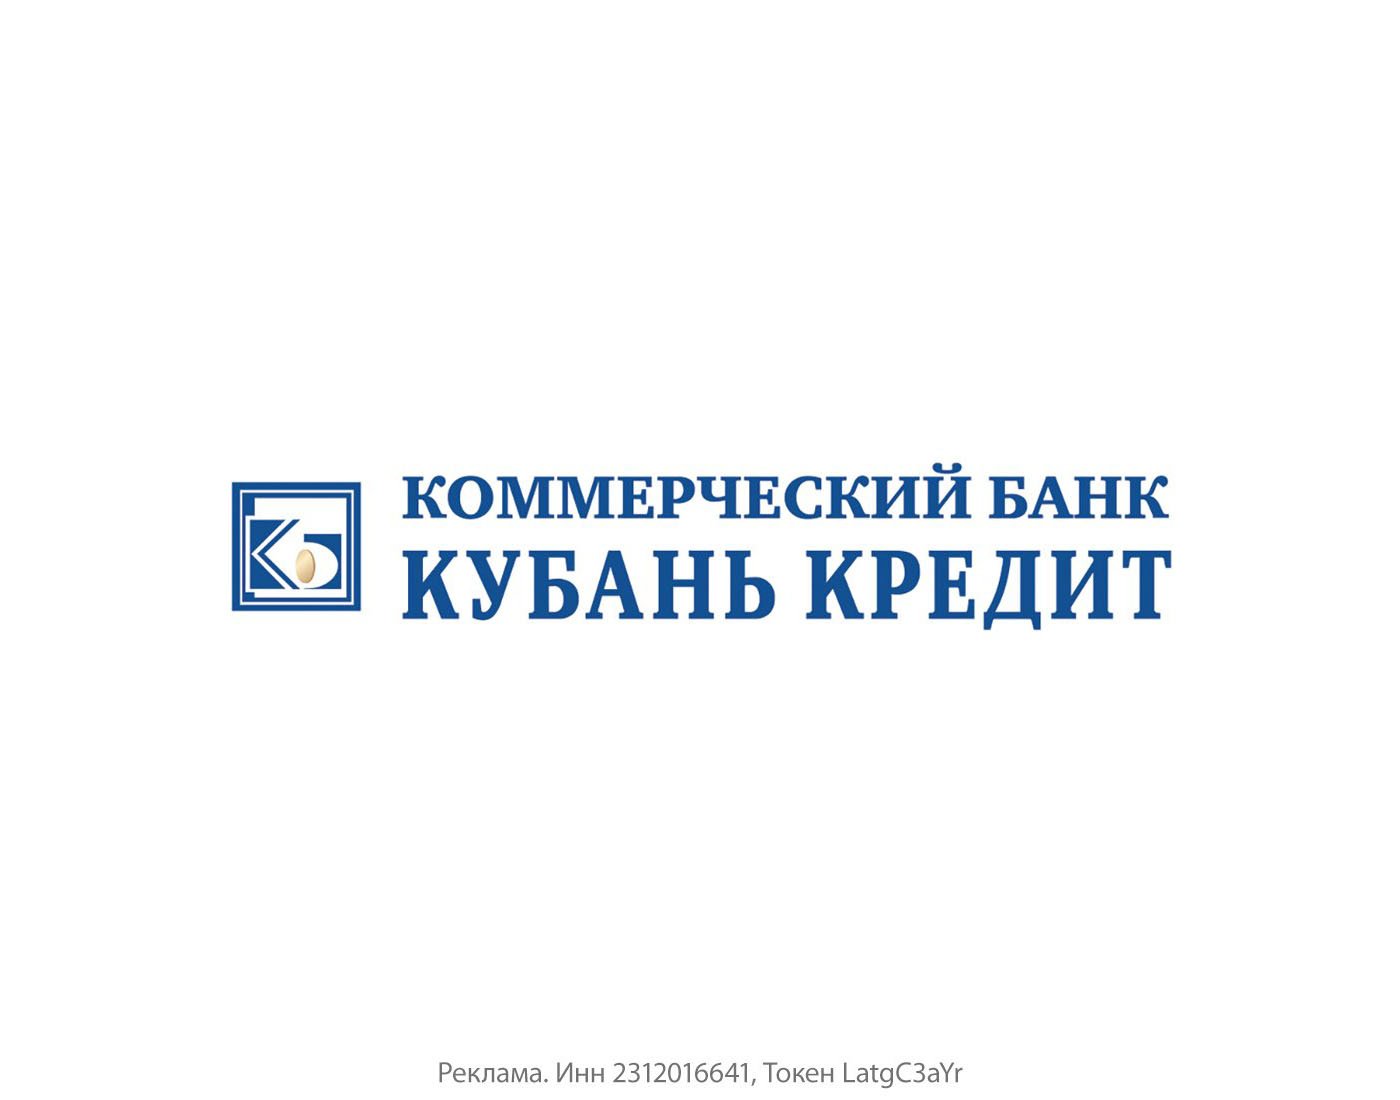 Крупнейший частный банк юга России